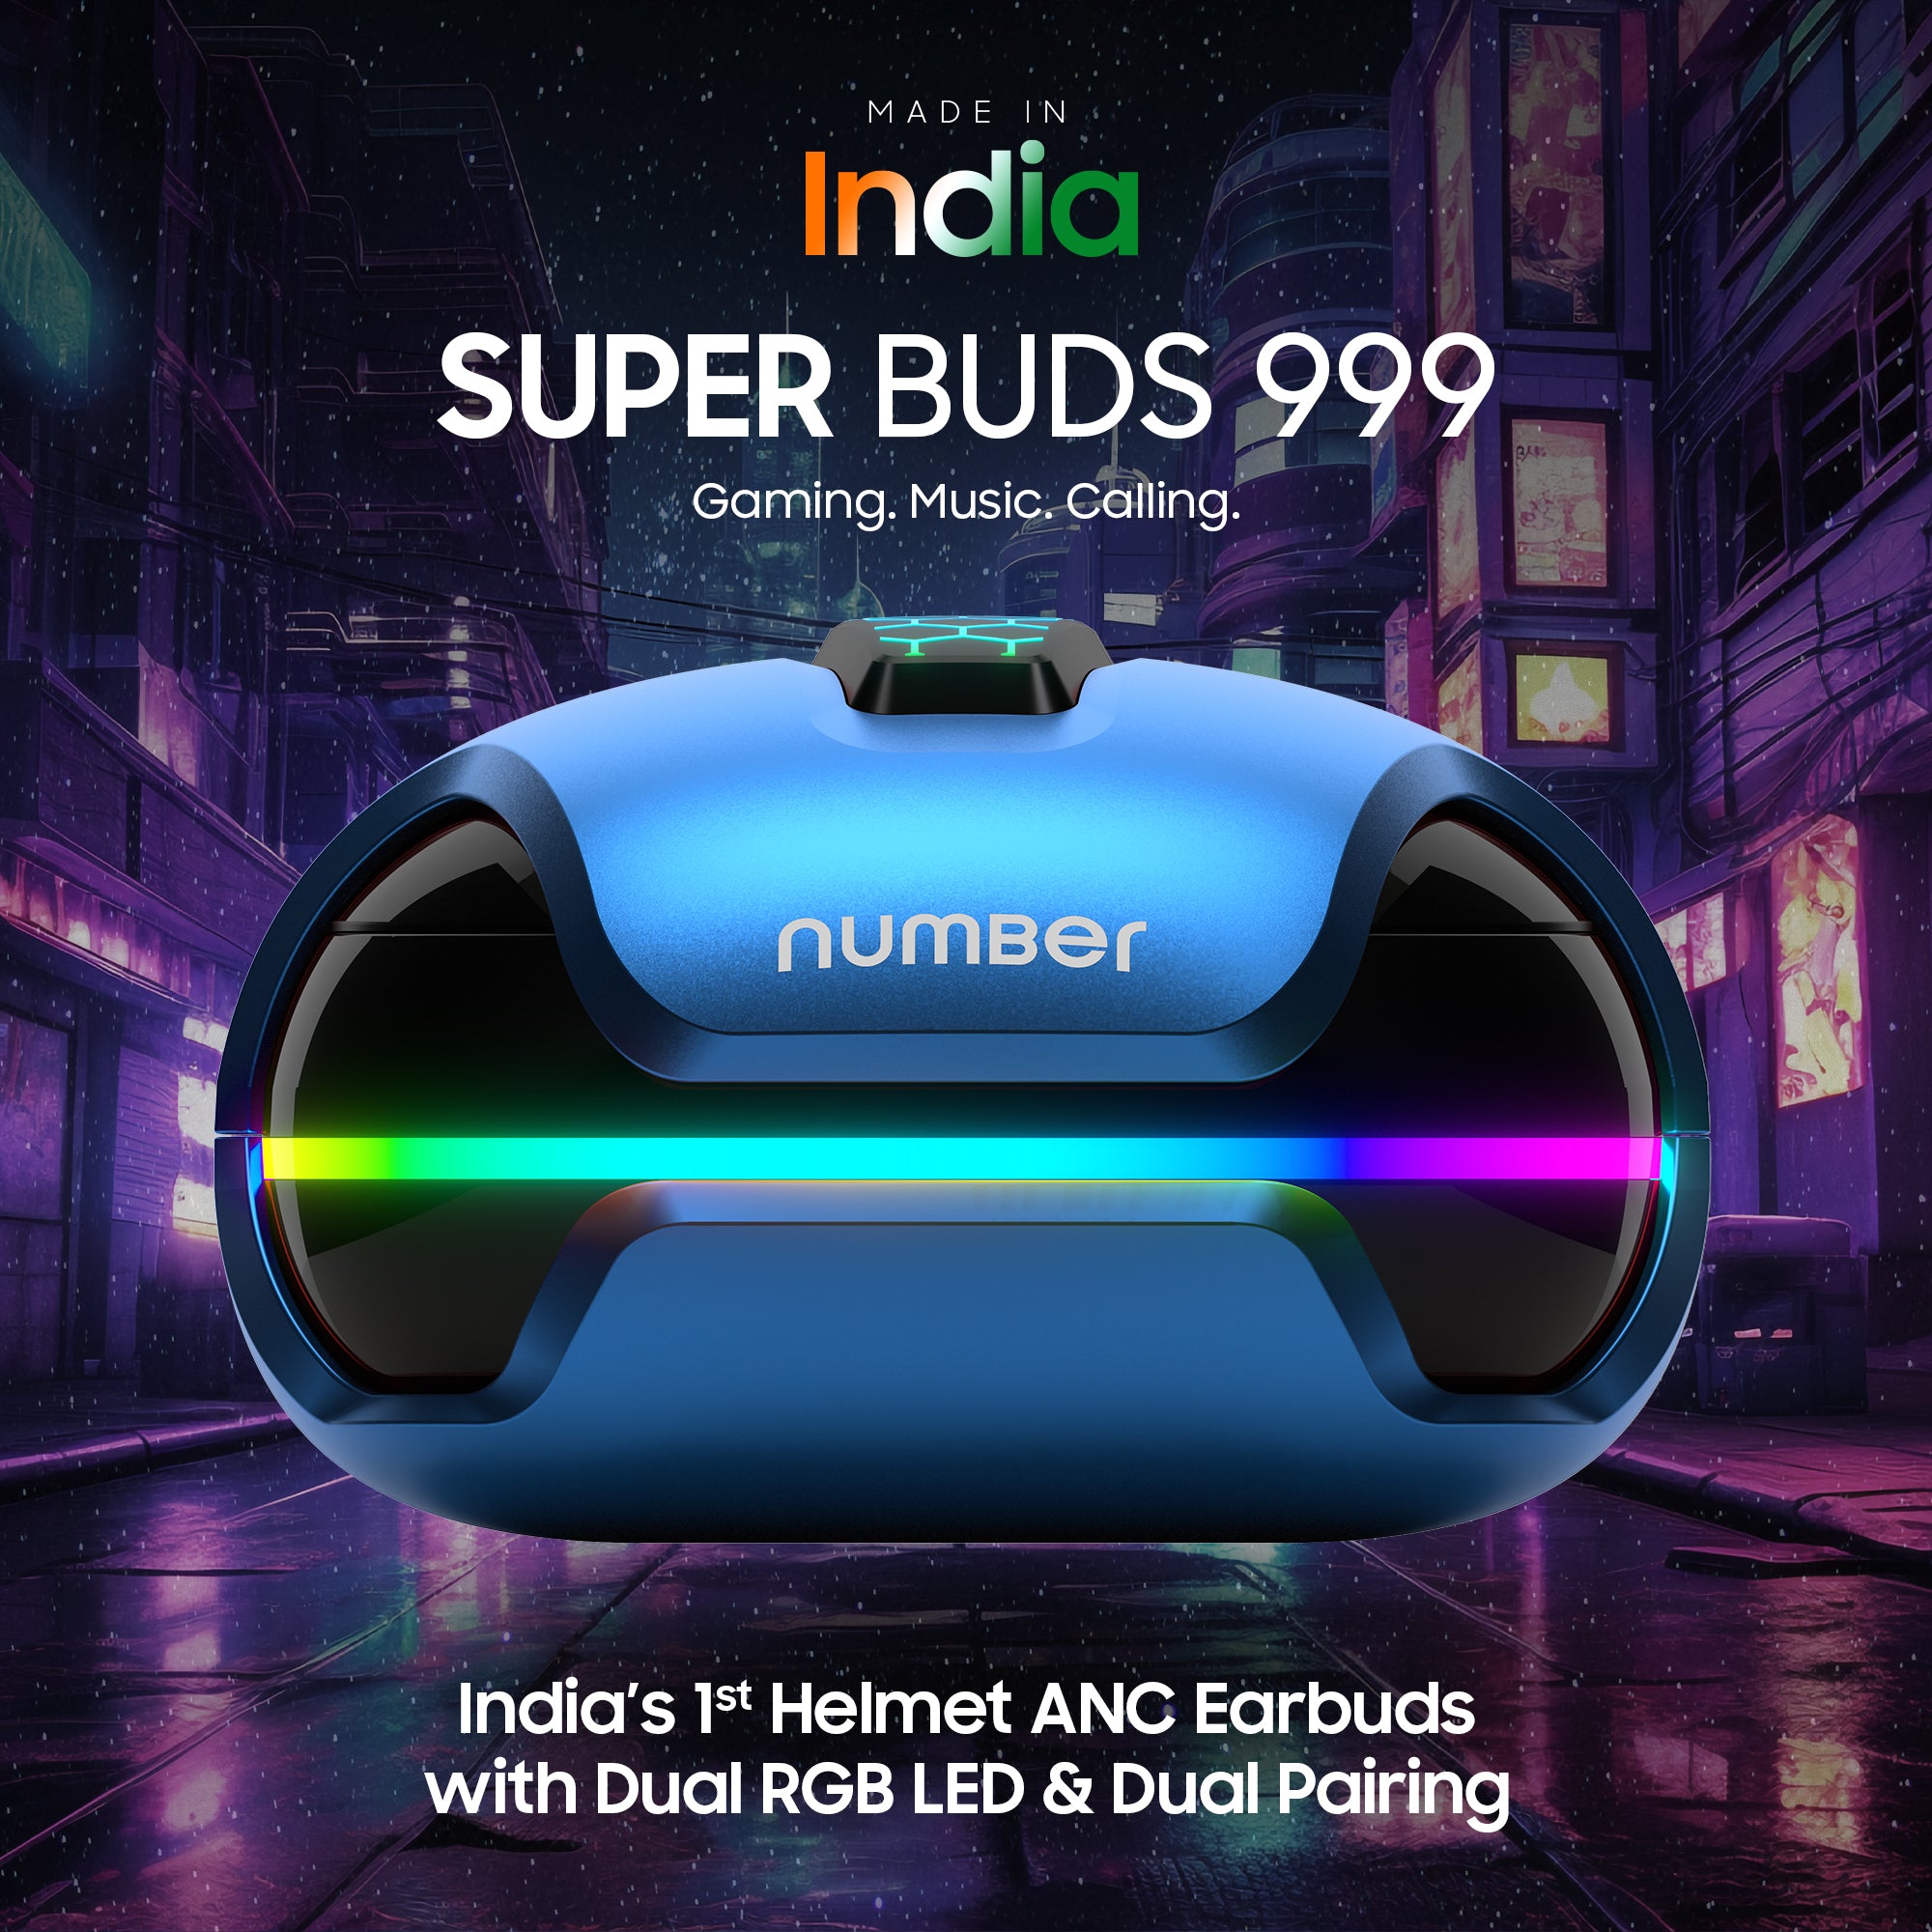 Super Buds 999